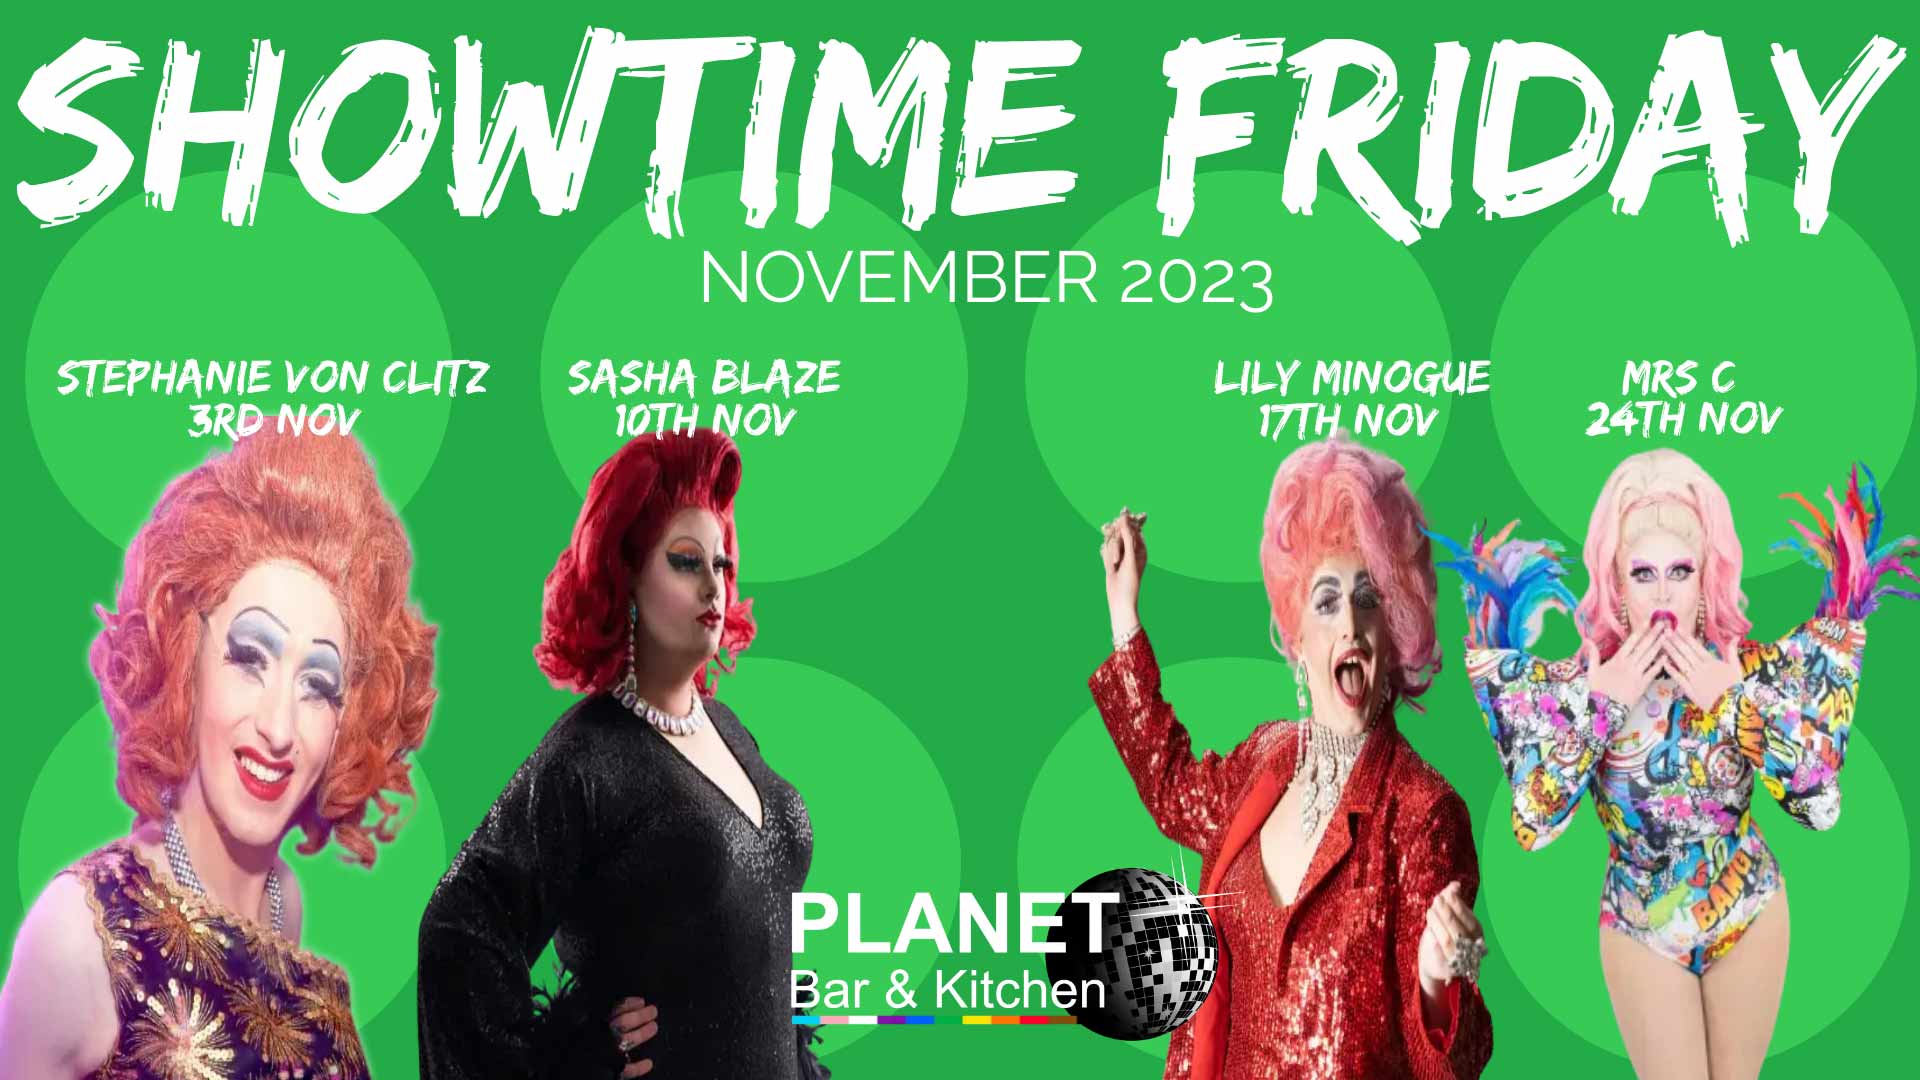 Showtime Friday, November 2023. 3rd November, Stephanie Von Clitz; 10th November, Sasha Blaze; 17th November, Lily Minogue; 24th November, Mrs C